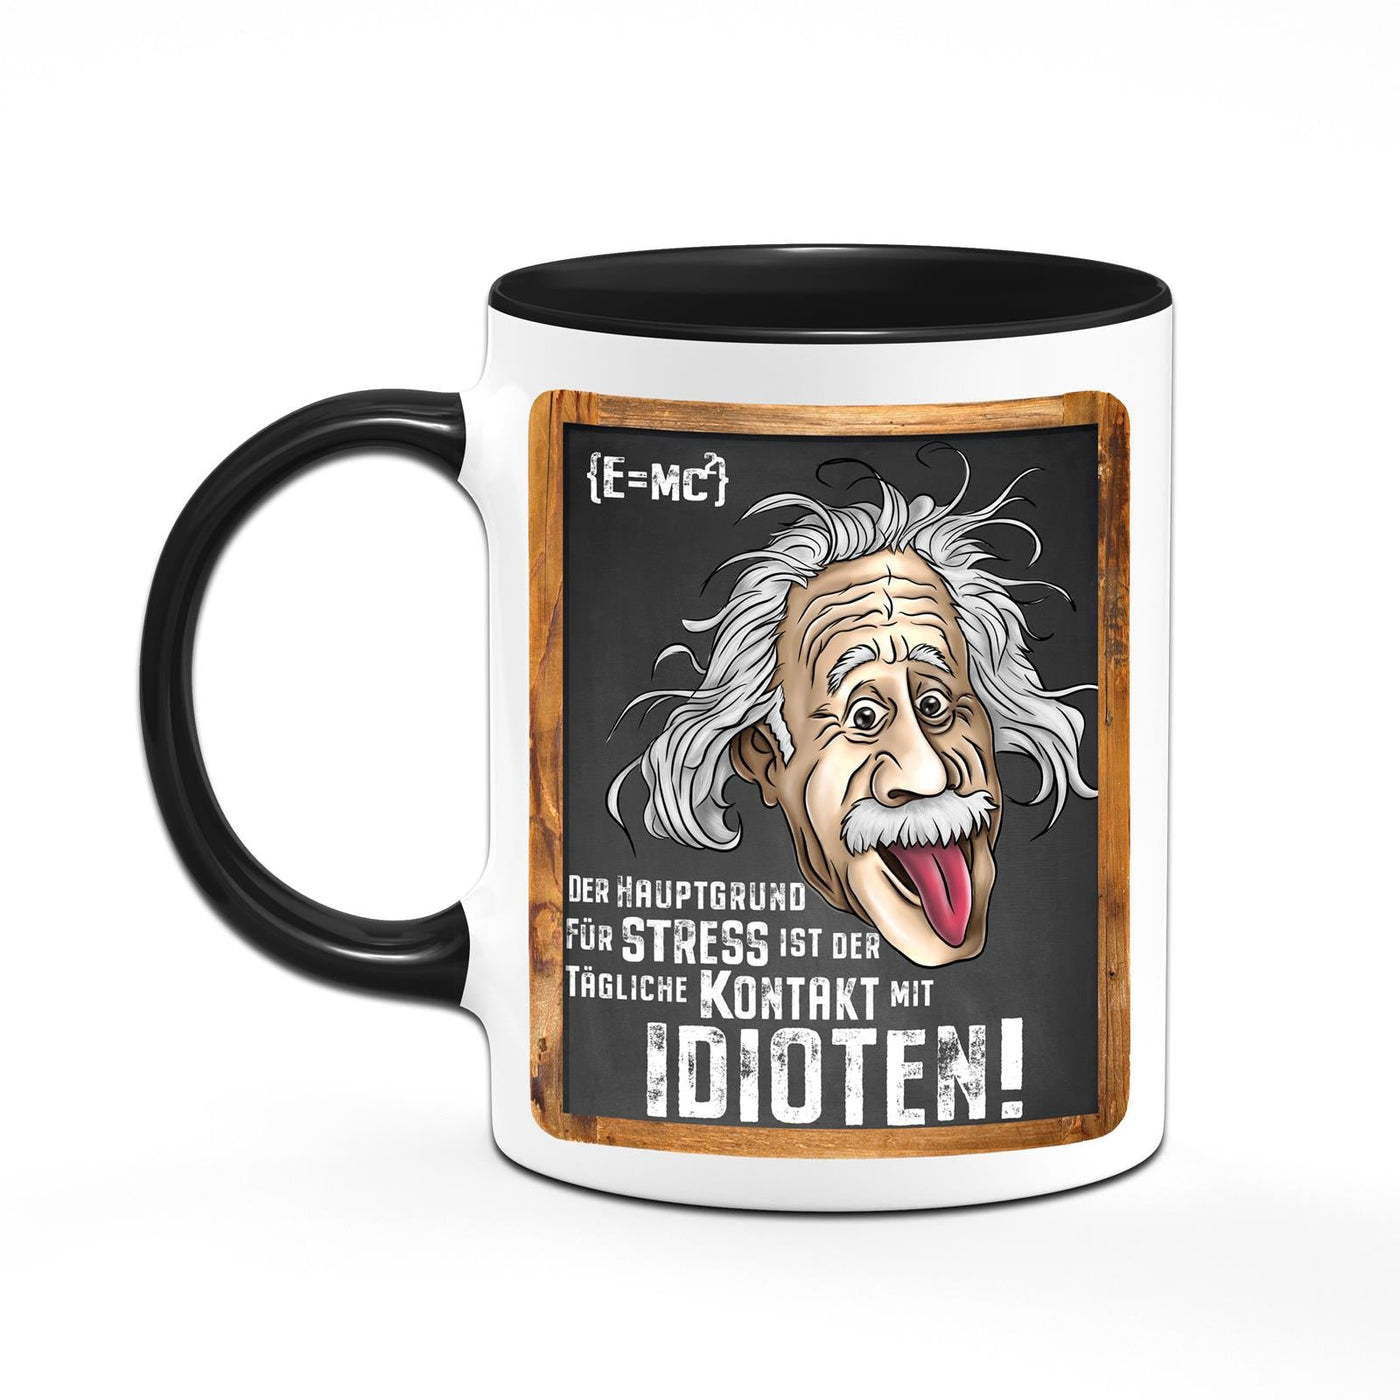 Bild: Tasse - Der Hauptgrund für Stress ist der tägliche Kontakt mit Idioten! - Einstein Geschenkidee